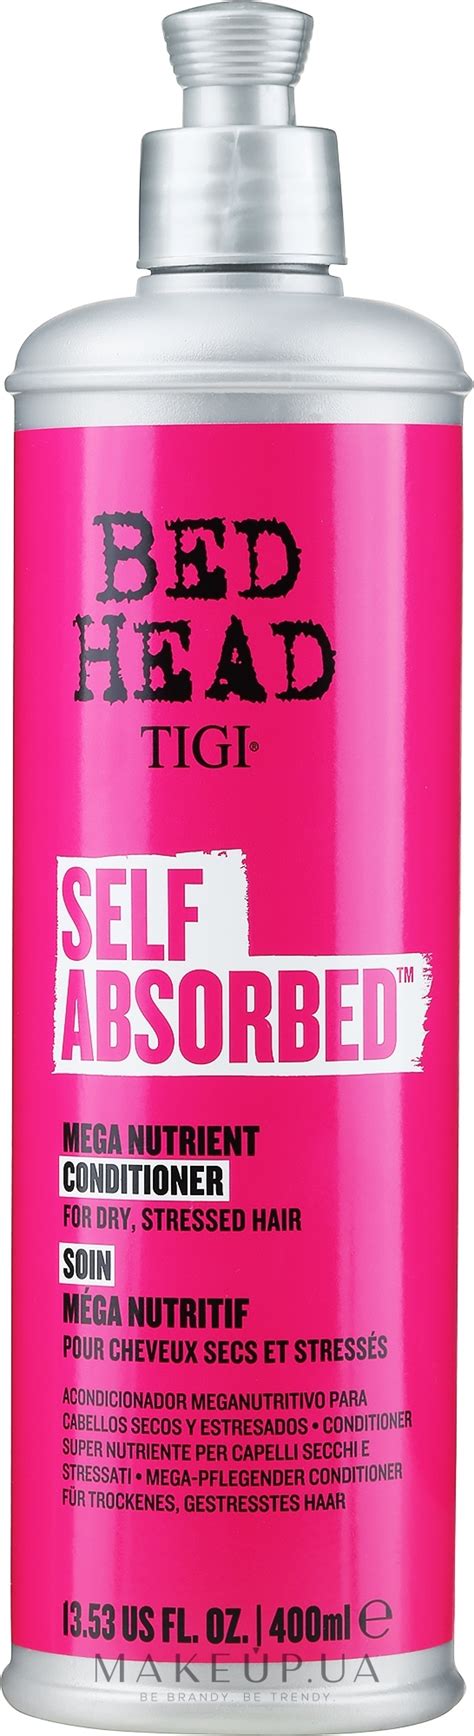 Tigi Bed Head Self Absorbed Mega Vitamin Conditioner Кондиционер